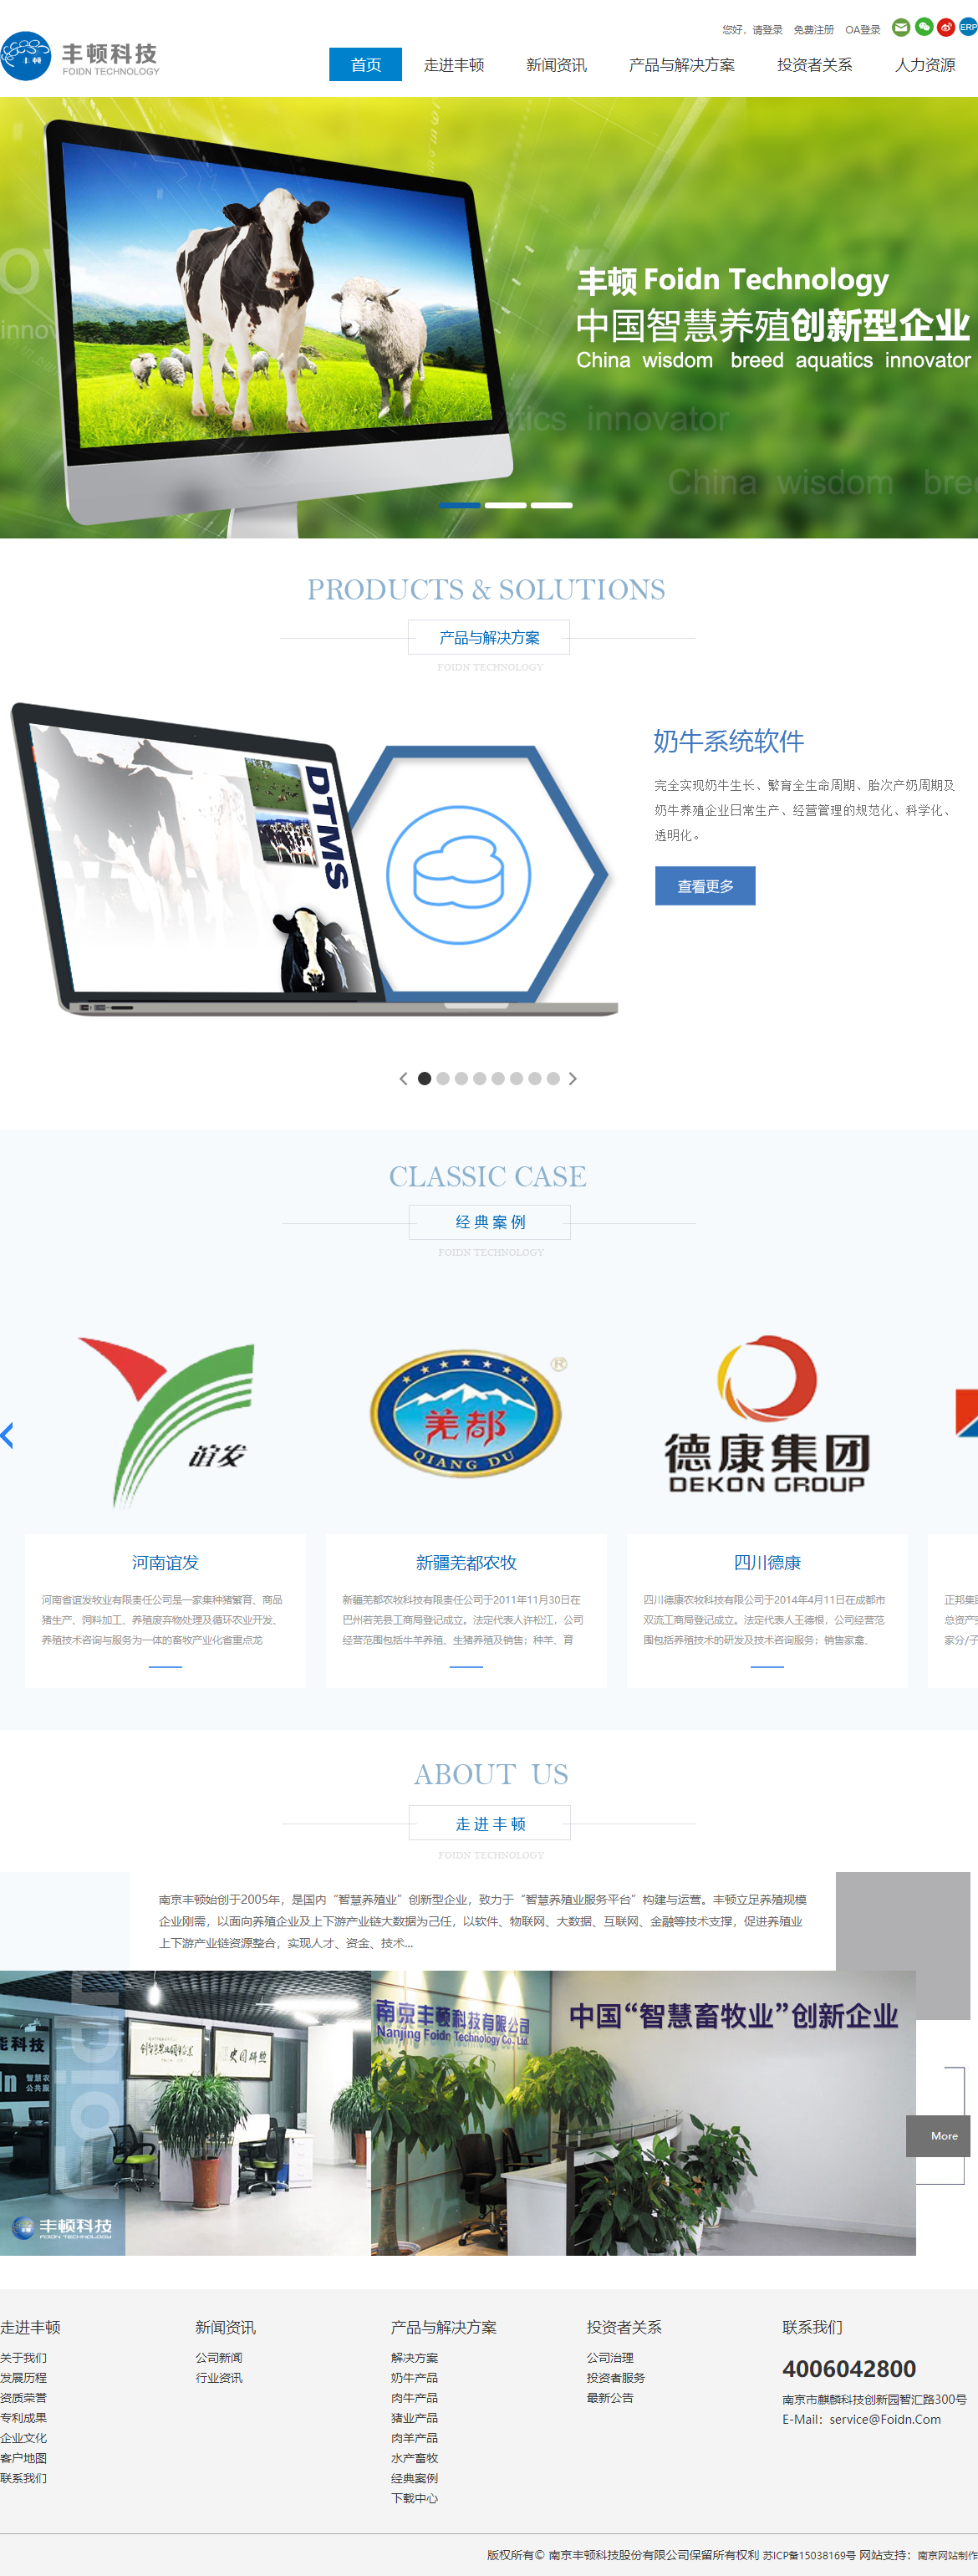 南京丰顿科技股份有限公司网站案例